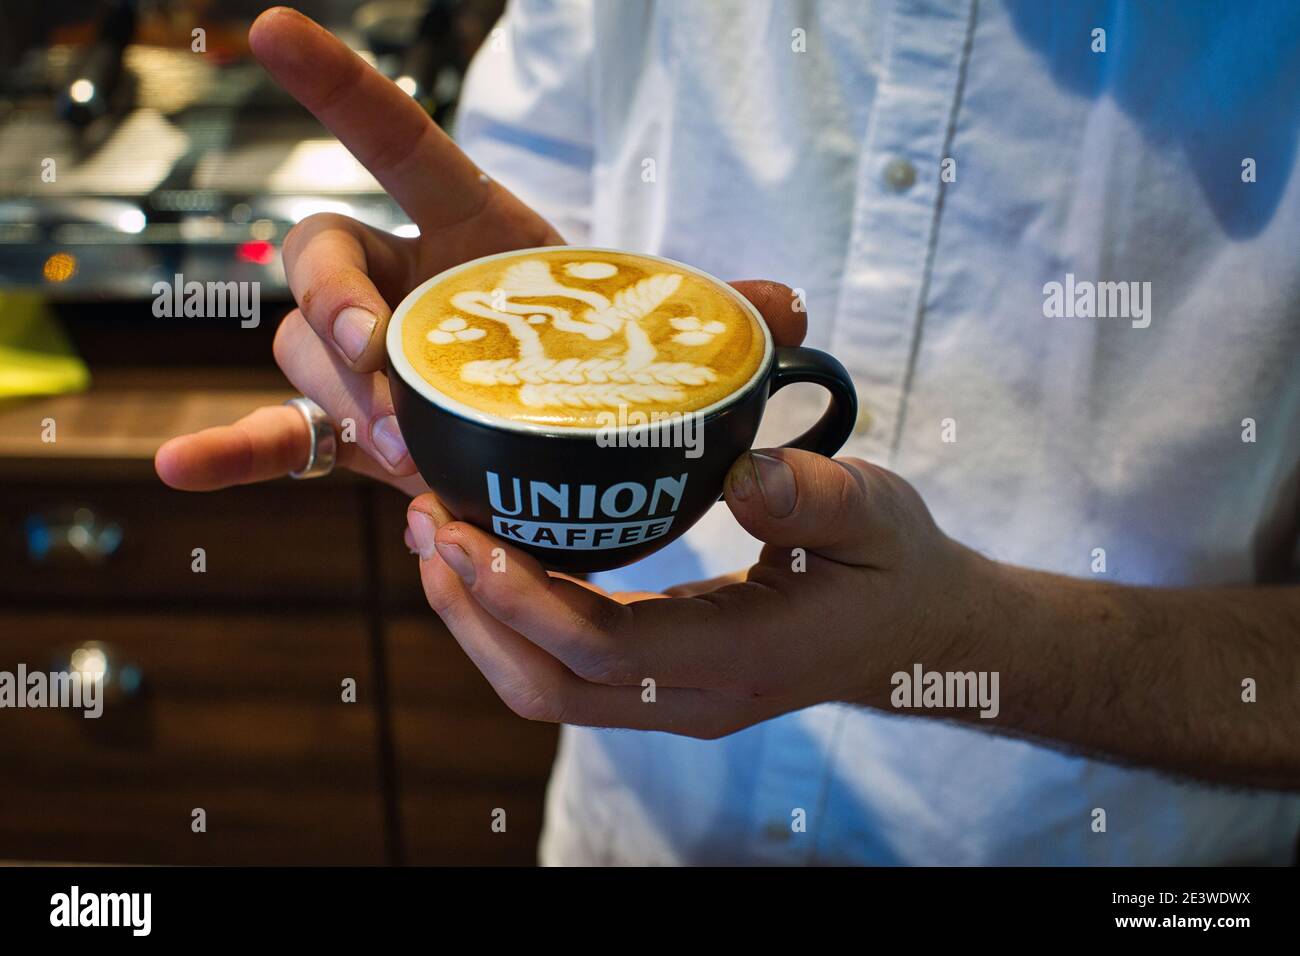 Yuri Marschall latte campeón de arte de Alemania durante el campeonato de degustación de la Copa, del 9 al 11 de febrero de 2020 en Bremen, Alemania. Foto de stock